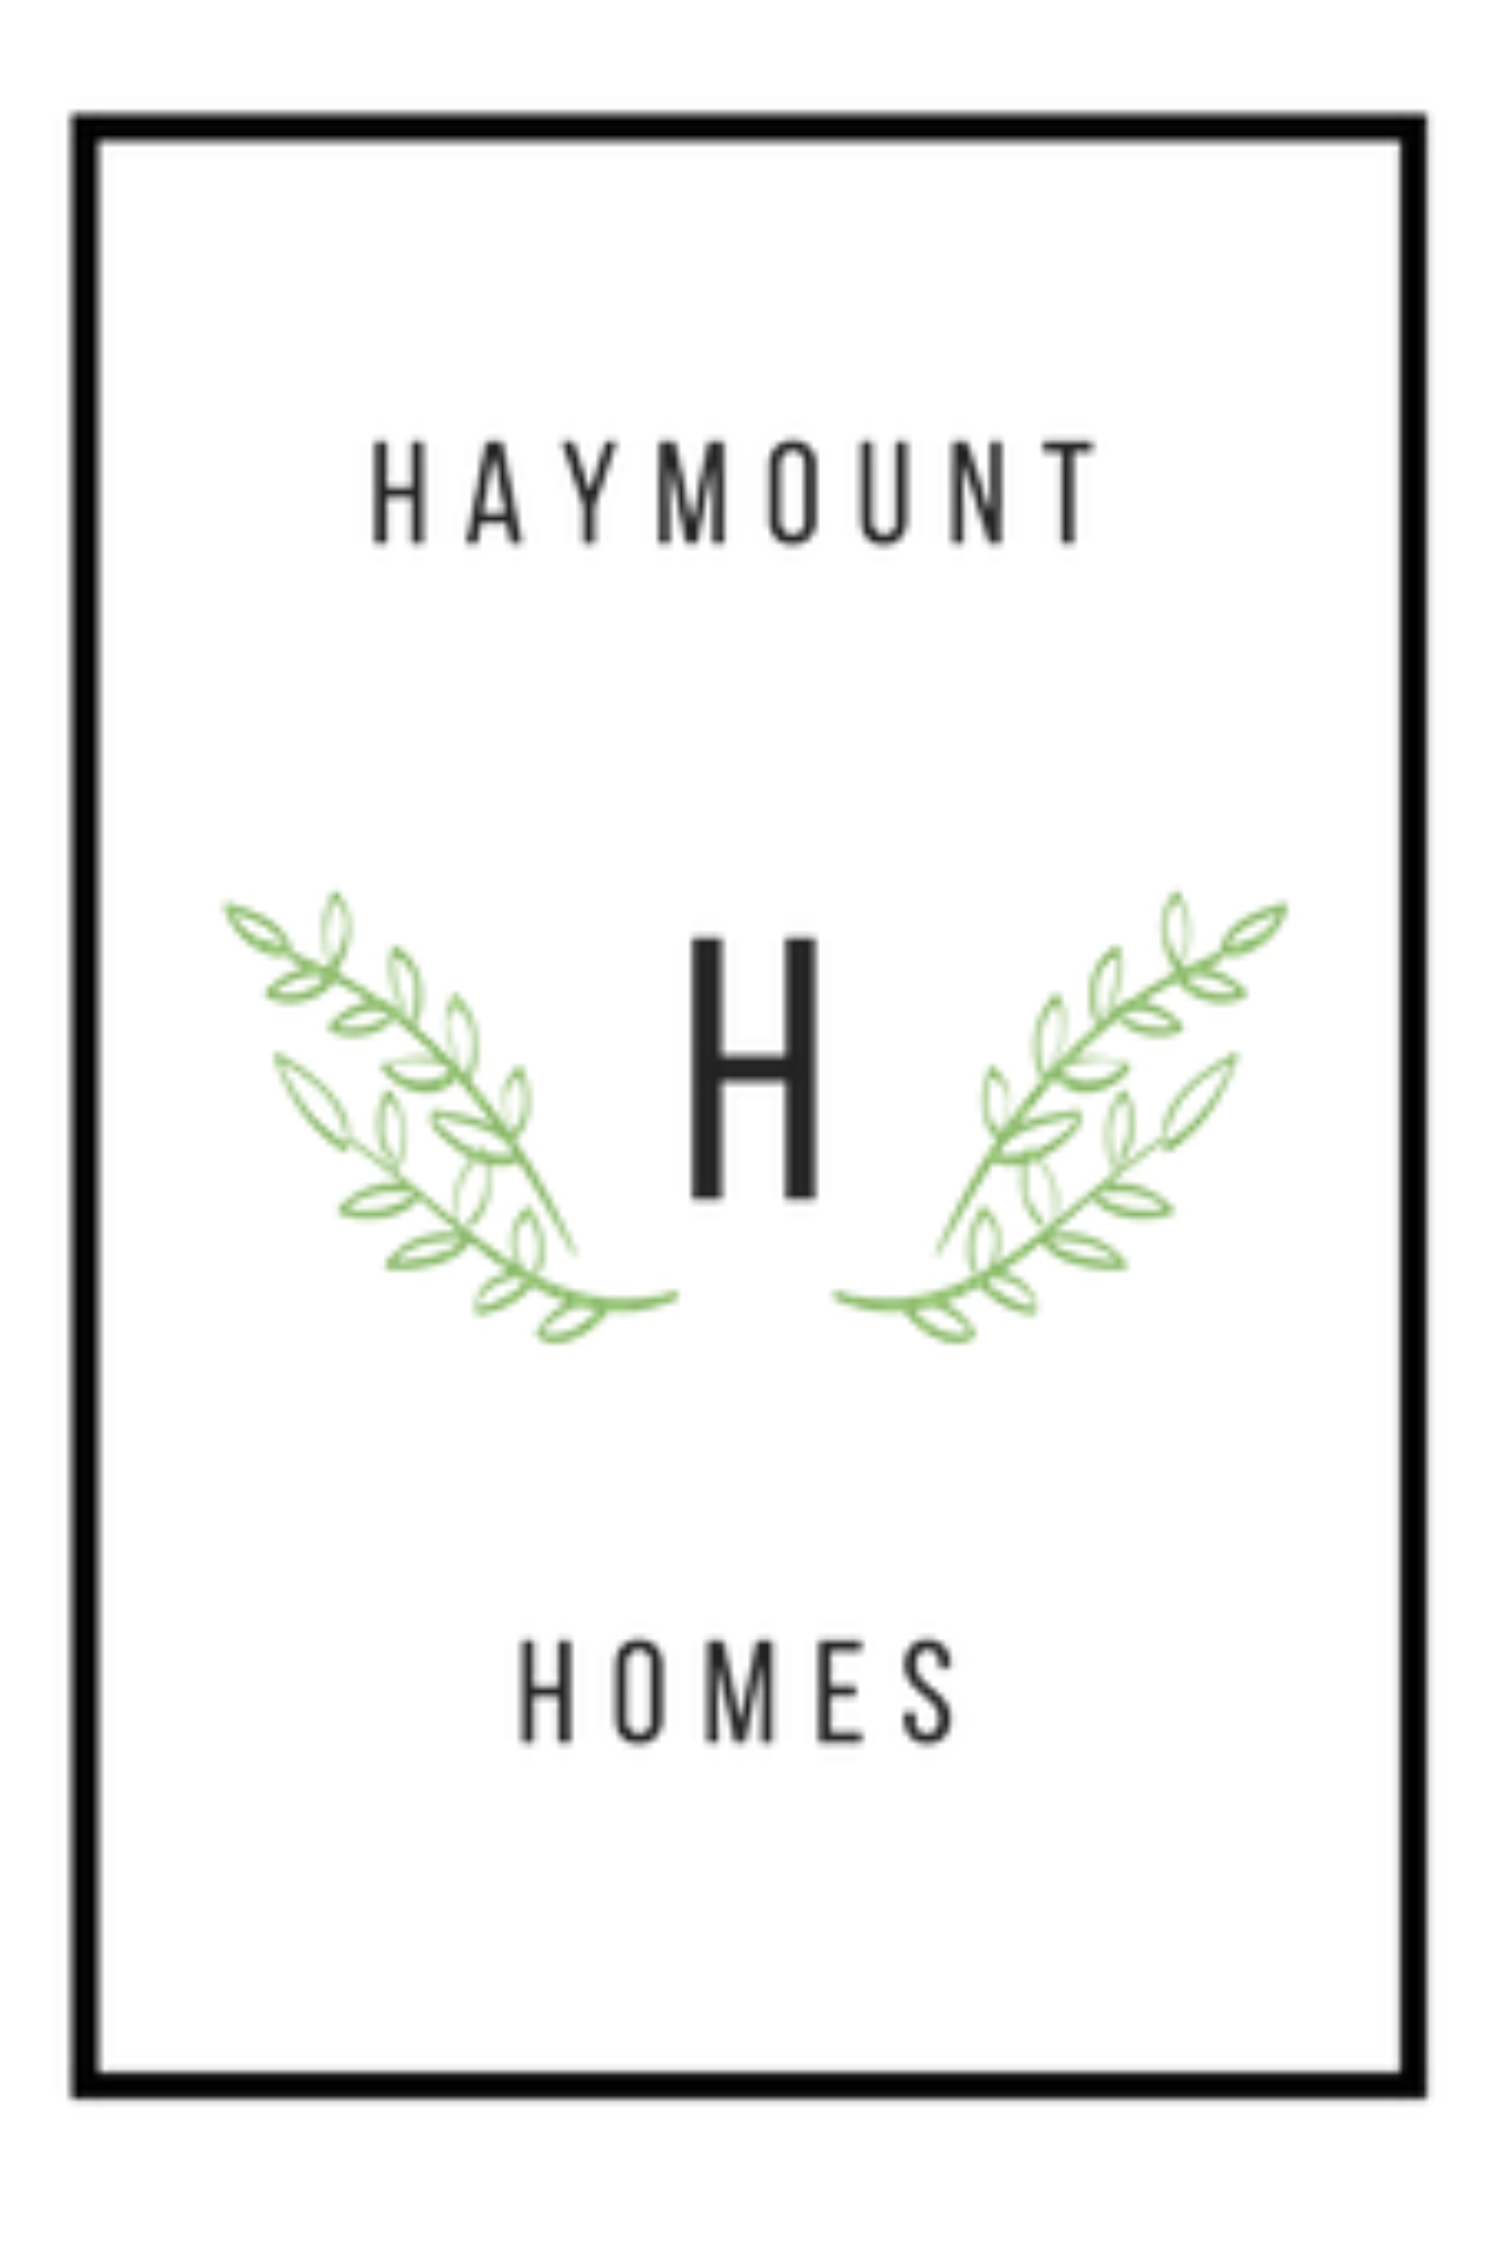 Haymount Homes